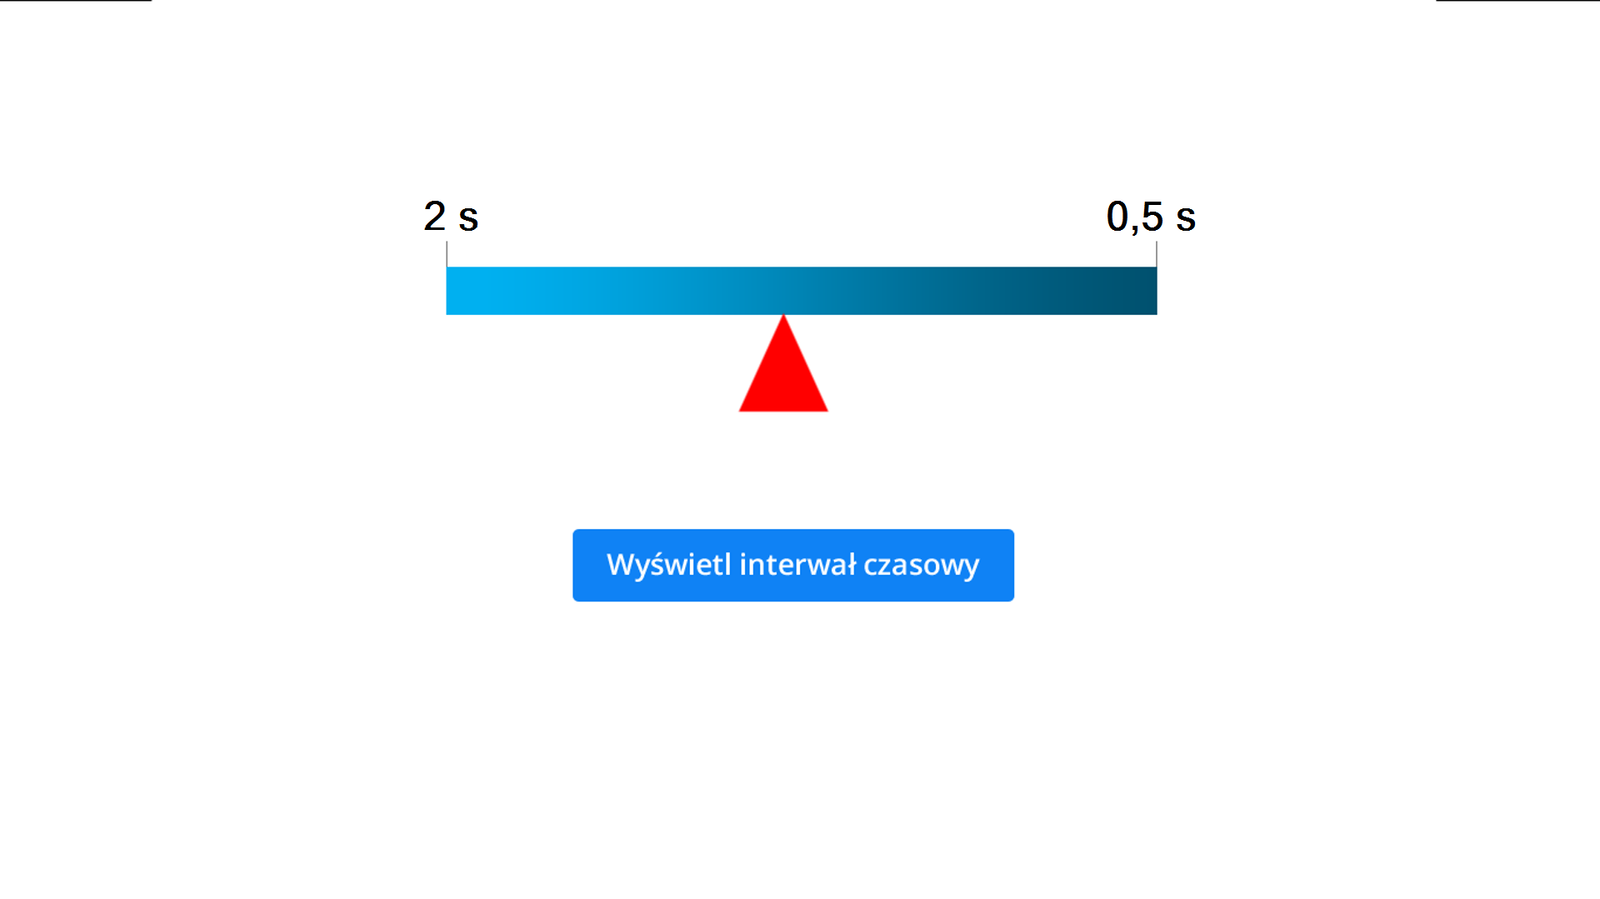 Aplikacja umożliwia wyświetlanie interwału czasowego. Tło białe. Po środku niebieski prostokąt. Dłuższy bok leży poziomo. Po lewej stronie widniej napis: 0,5 Hz, a po prawej 2 Hz. Tuż pod prostokątem znajduje się czerwony trójkąt równoramienny. Jeden z wierzchołków styka się z prostokątem. Podstawa trójkąta położona równolegle do dłuższego boku prostokąta. Za pomocą myszy kursora muszy można przesuwać trójkąt. Trójkąt przesuwa się wzdłuż dłuższego boku prostokąta. Przesuwając trójkąt w lewo dźwięk słychać w większych odstępach czasu. Przesuwając w prawo, dźwięk jest słyszany w mniejszych odstępach czasu. Na samym dole znajduje się niebieski przycisk. Przycisk opisano: „Wyświetl interwał czasowy”. Po jego naciśnięciu, nad trójkątem pokazuje się interwał czasowy. Na przykład: dla 0,5 Hz są to 2 sekundy. Dla 2 Hz jest to 0,5 sekundy.